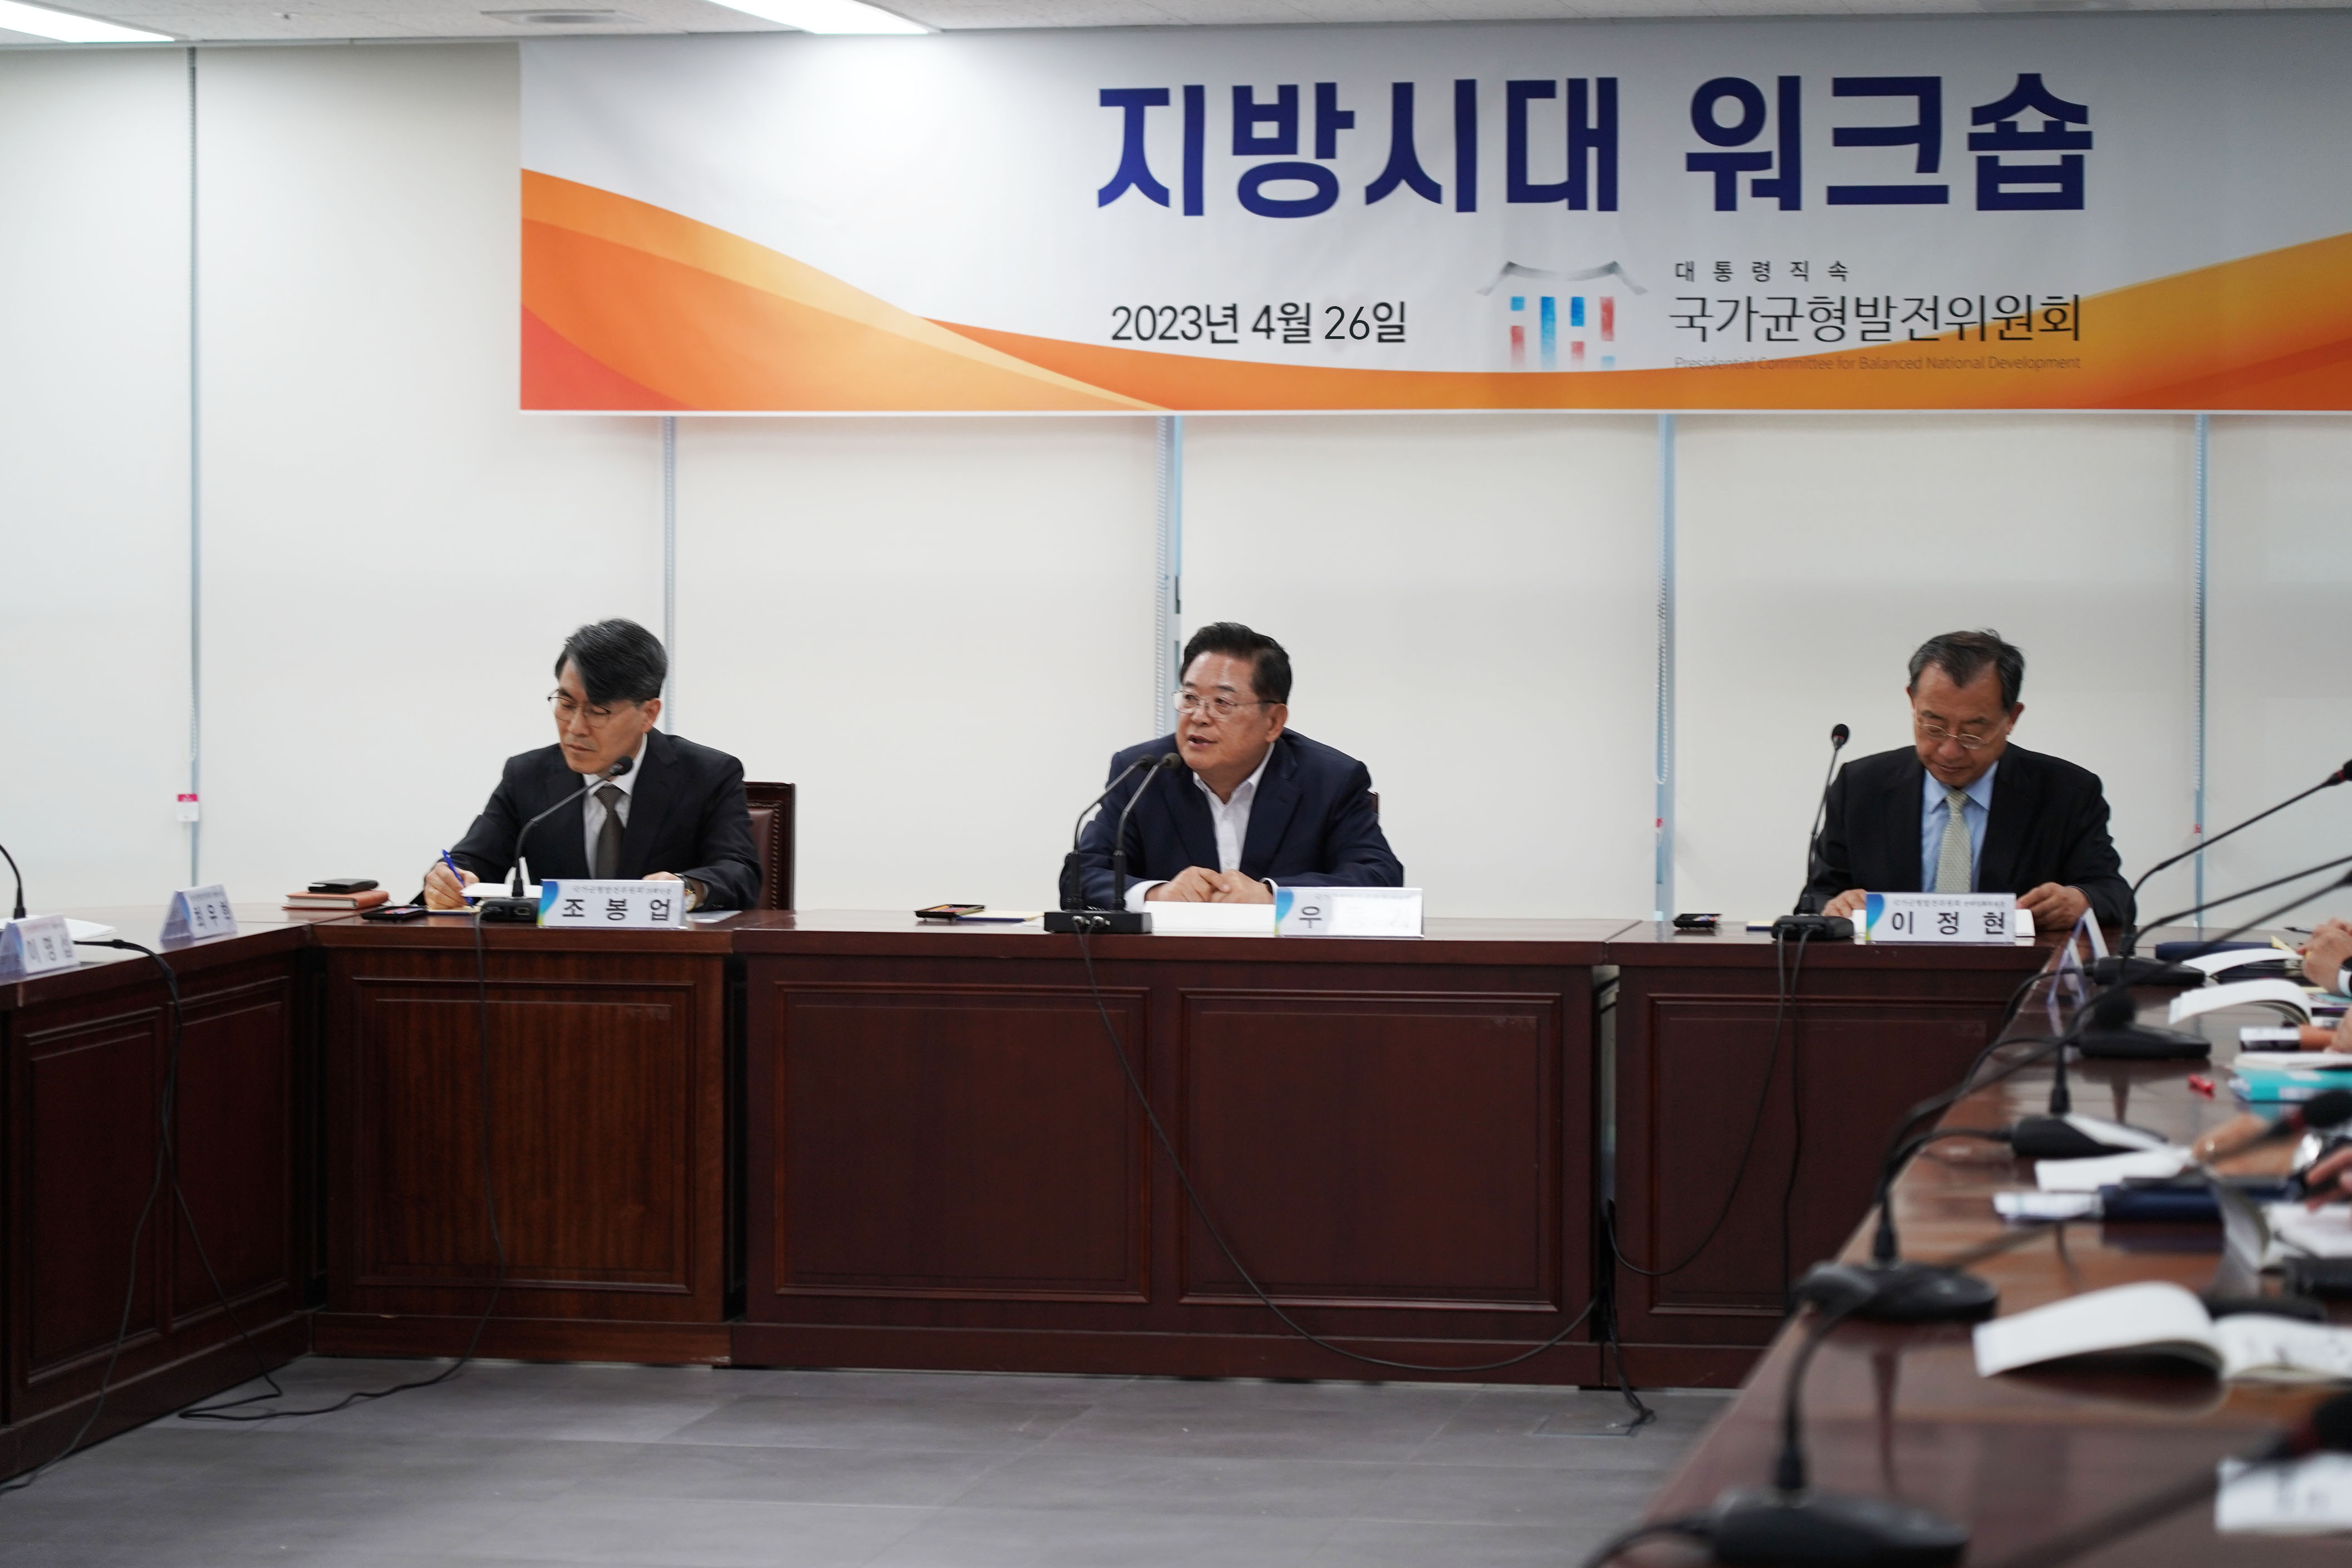 <사진1>  4월26일 「지방시대 워크숍」을 국가균형발전위원회 대회의실에서 개최하였다.